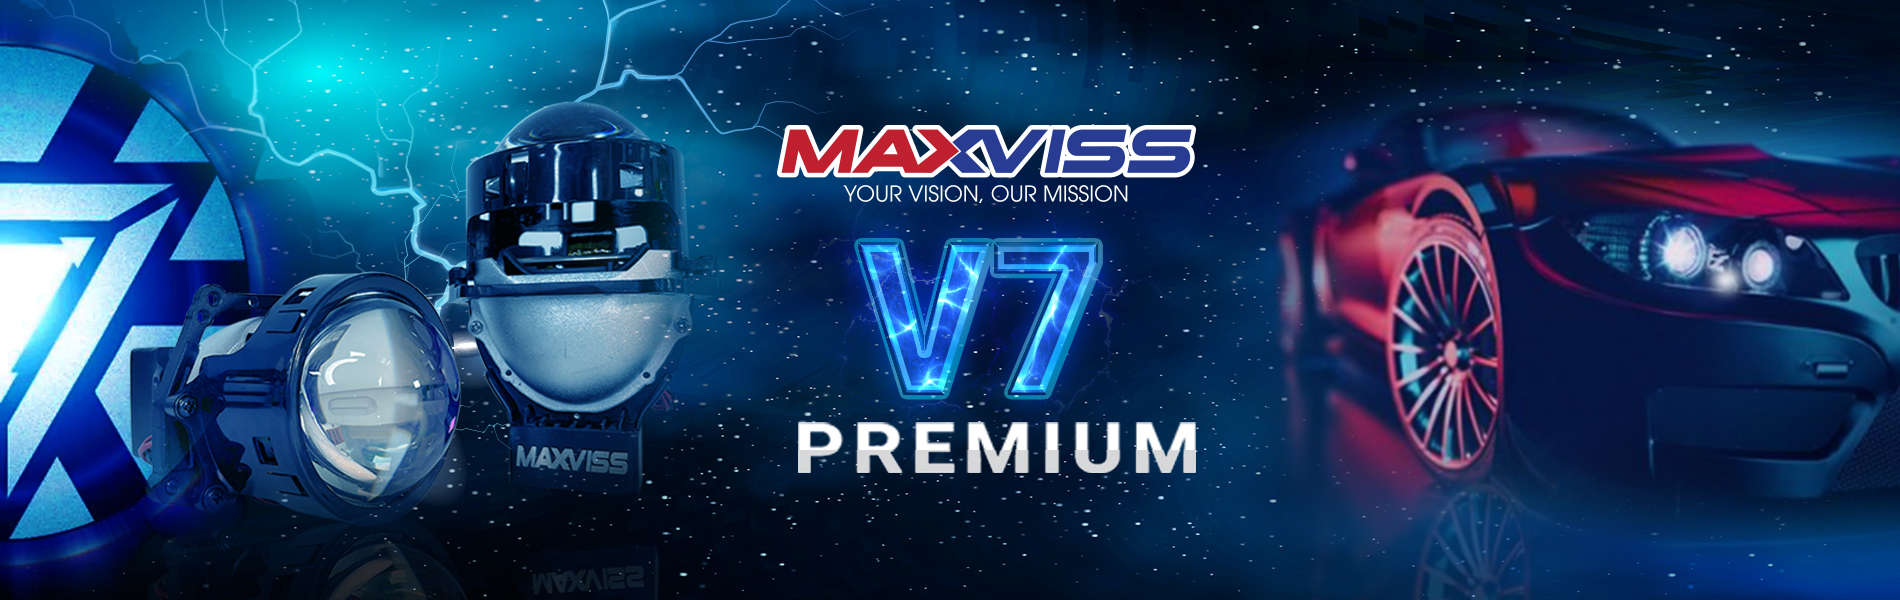 BI LED MAXVISS V7 PREMIUM